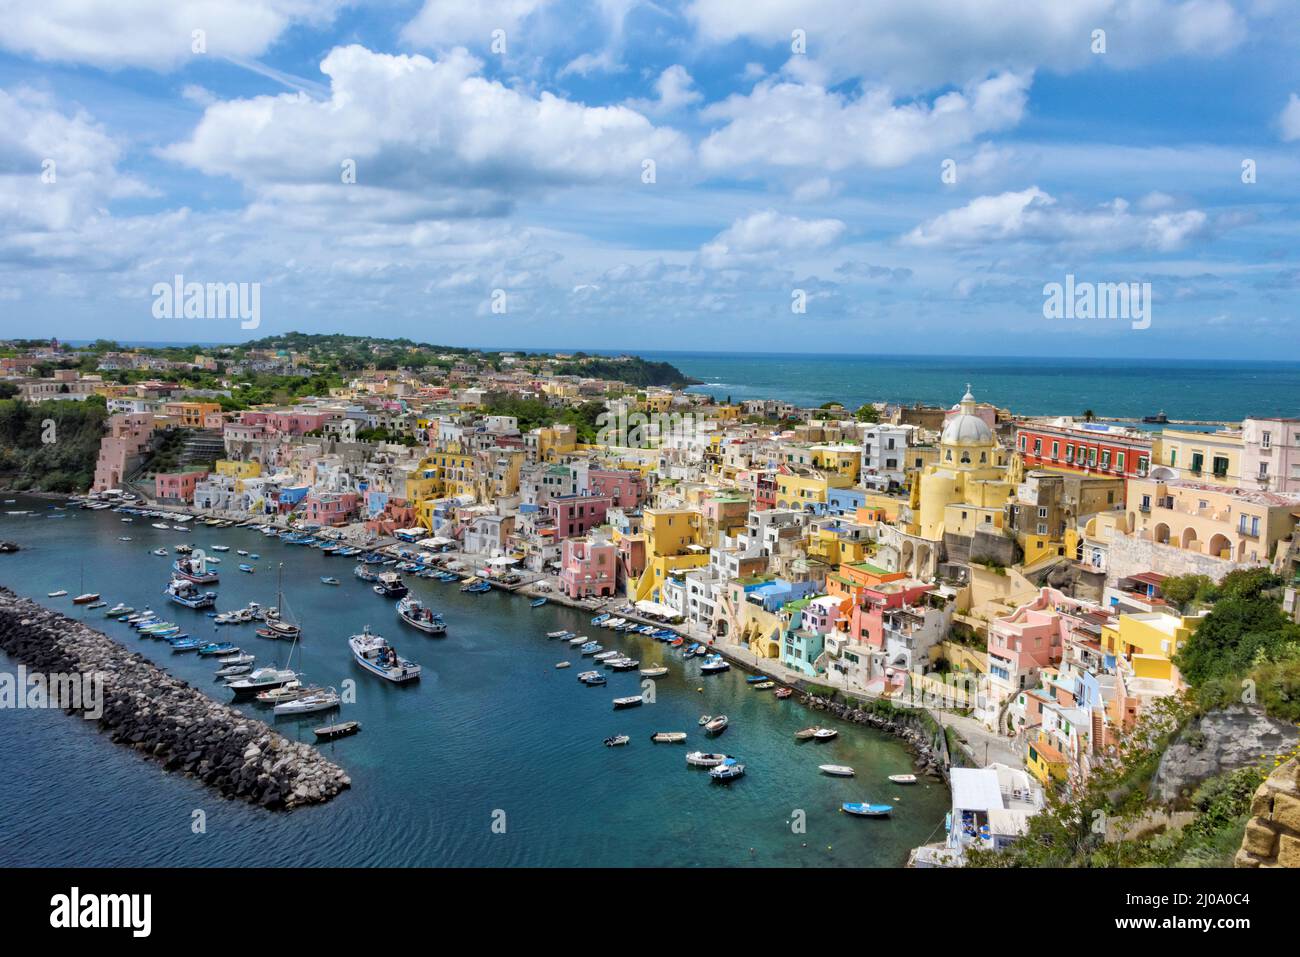 Santuario de Santa Maria delle Grazie y coloridas casas a lo largo del puerto, Procida, Nápoles, región de Campania, Italia Foto de stock